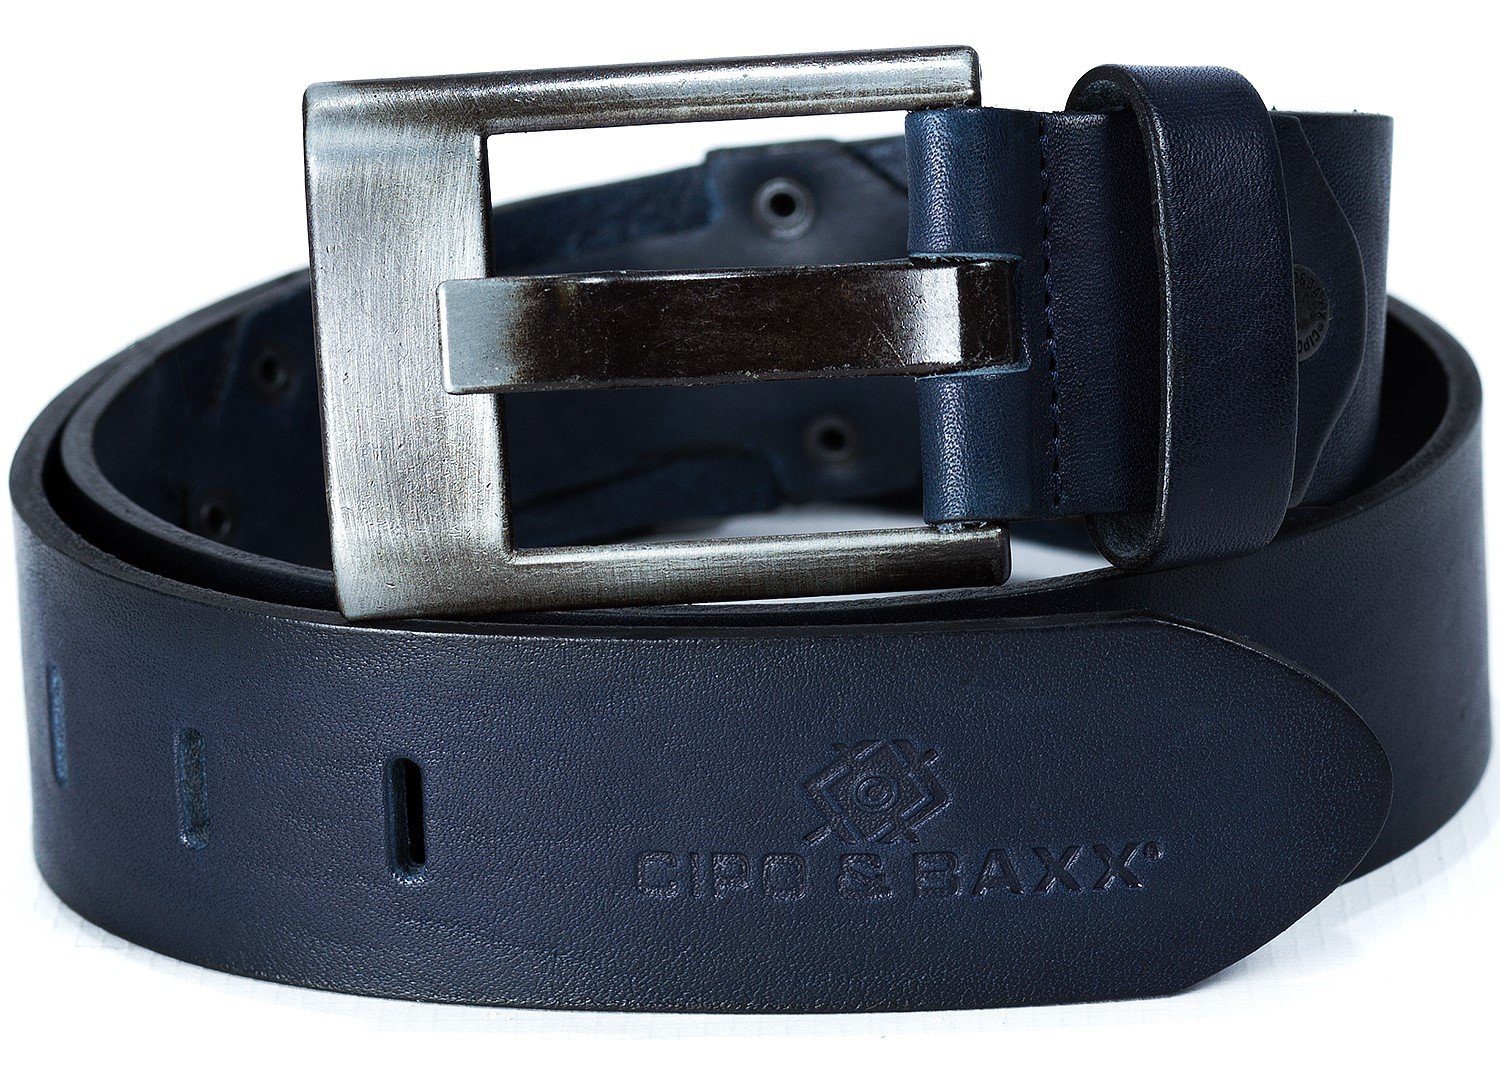 Markenschriftzug Cipo Casual & Gürtel BA-C-2163 mit Baxx Style navy Ledergürtel